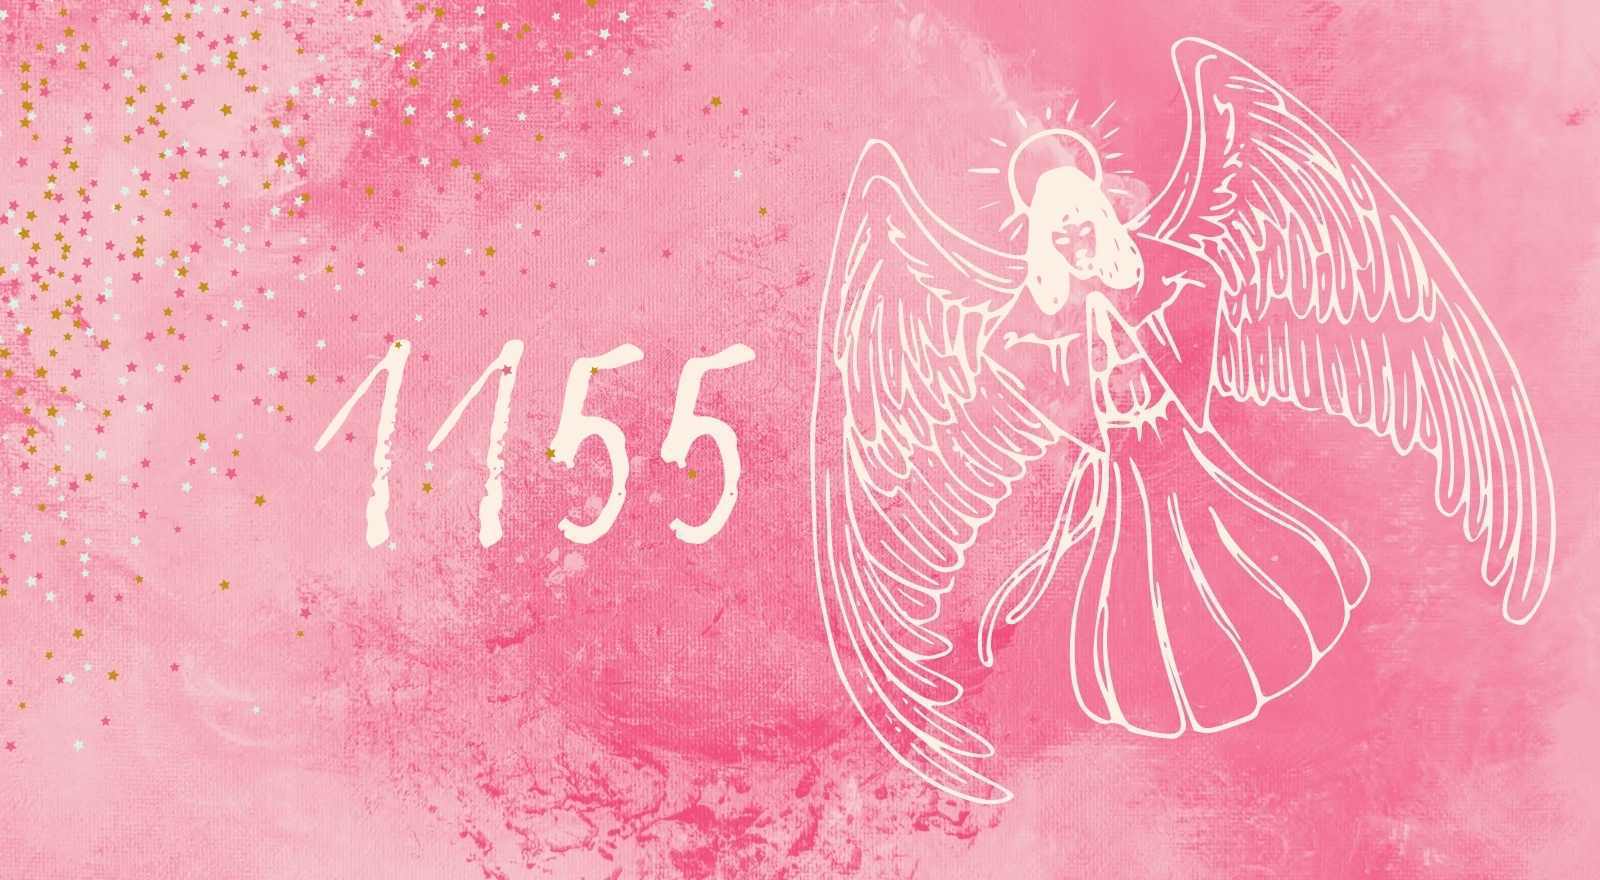 Engelen nummer 1155 - Wees klaar om uw wensen te uiten